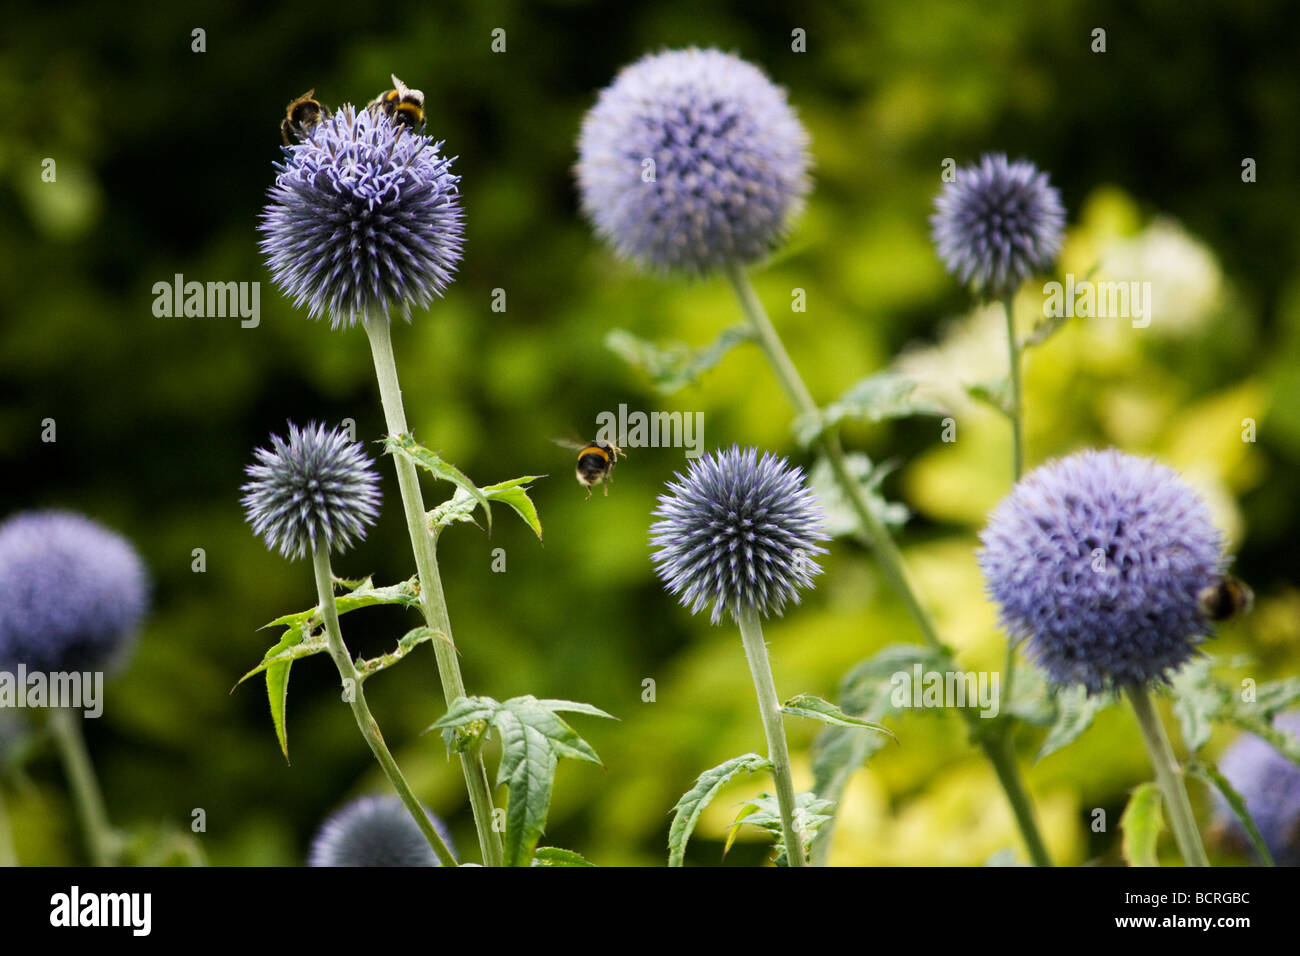 Bees buzzing around allium flowers in Falkner Square, Liverpool Stock Photo